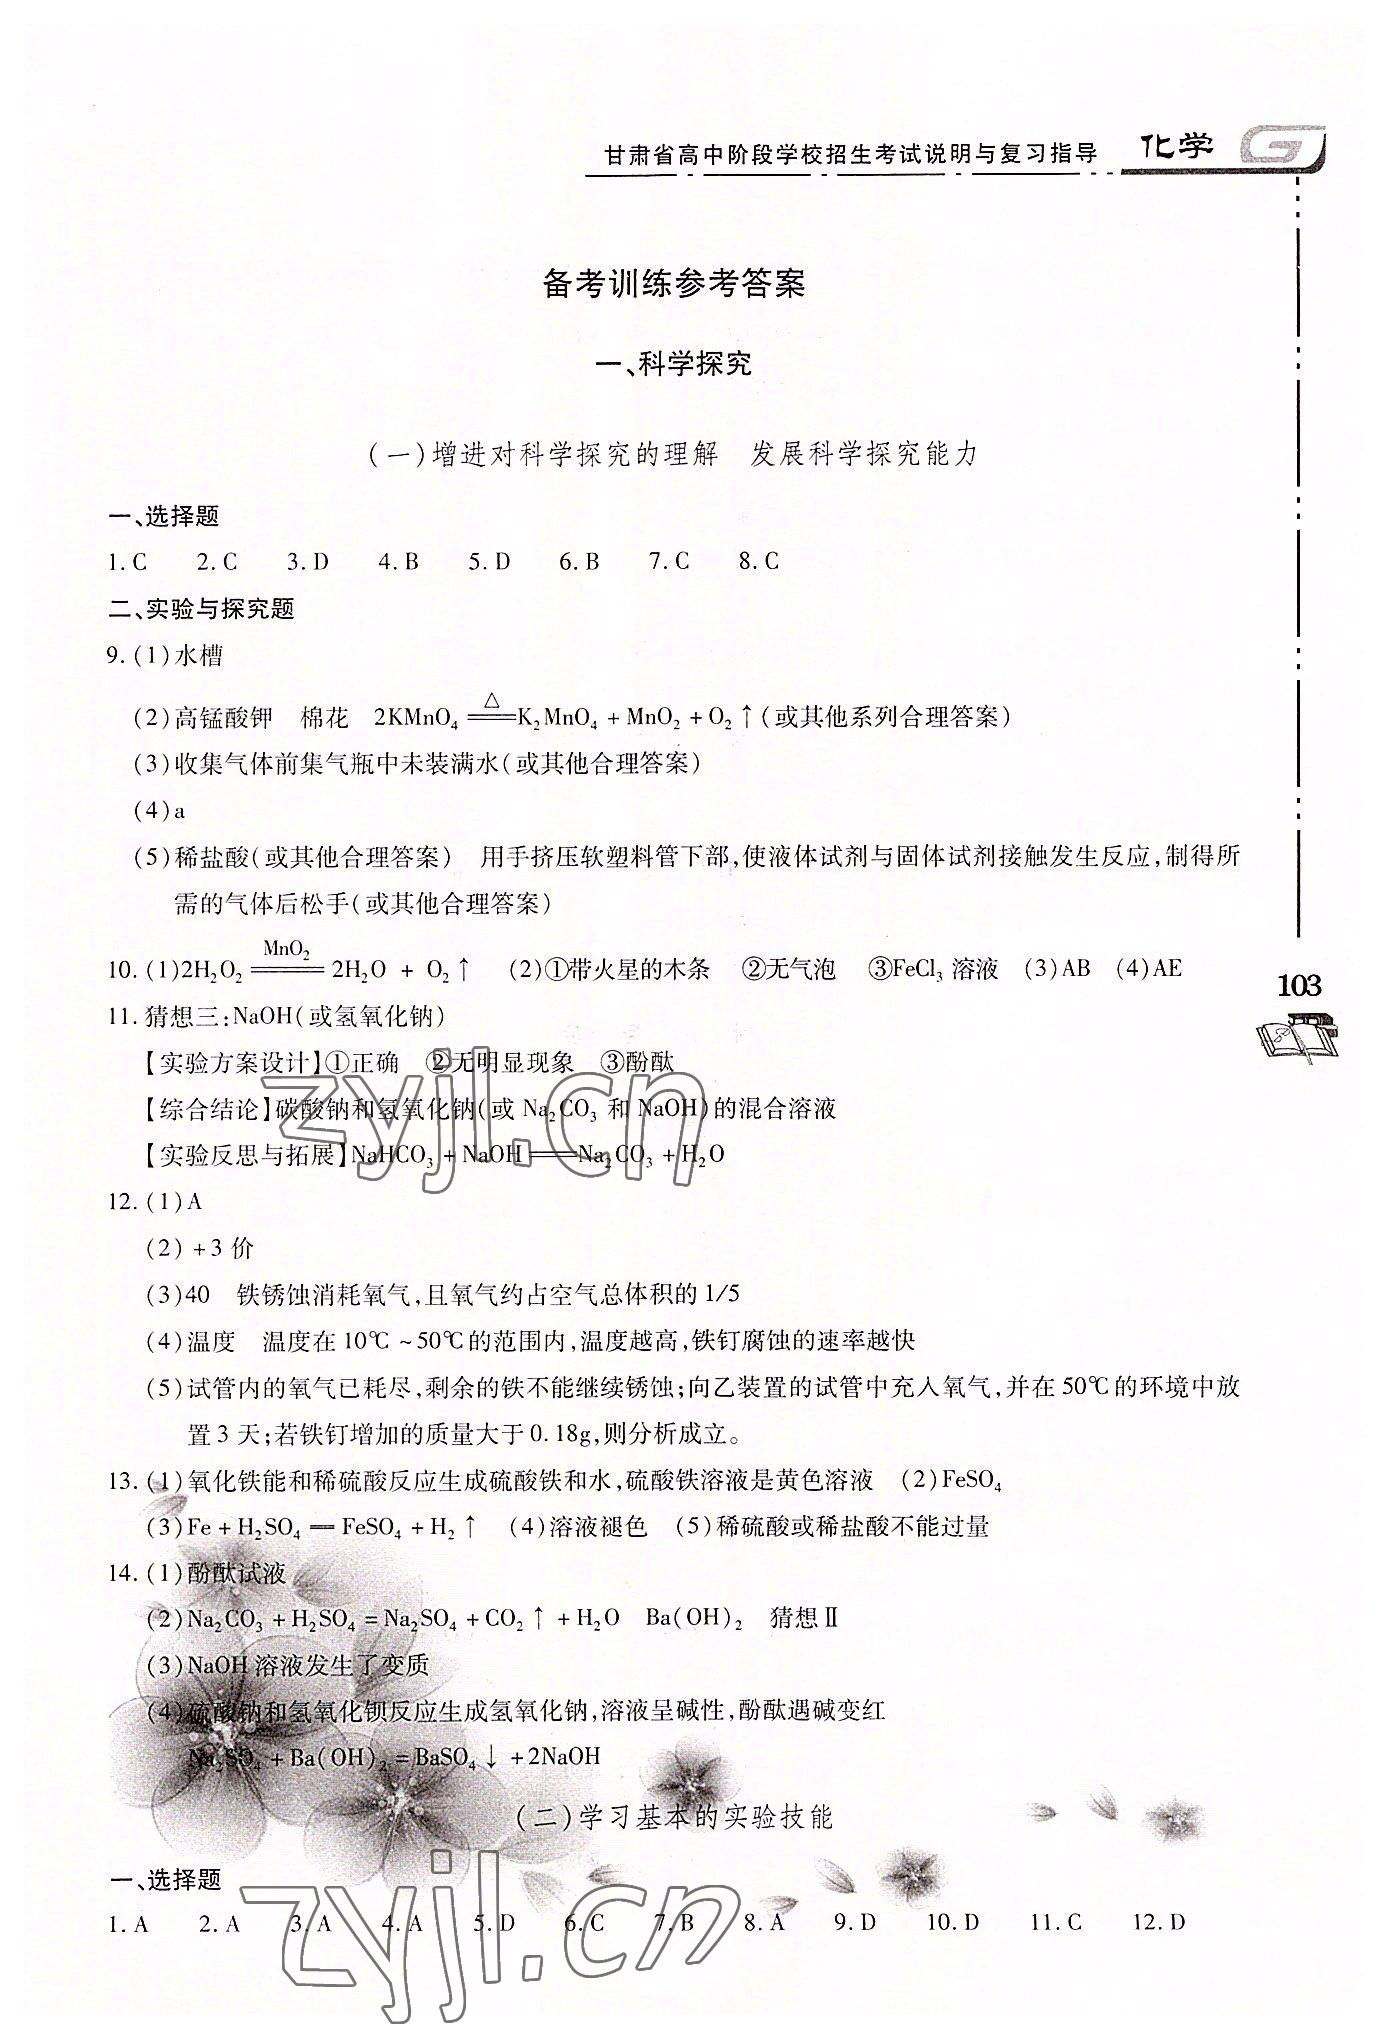 2022年甘肃省高中阶段学校招生考试说明与复习指导化学 第1页